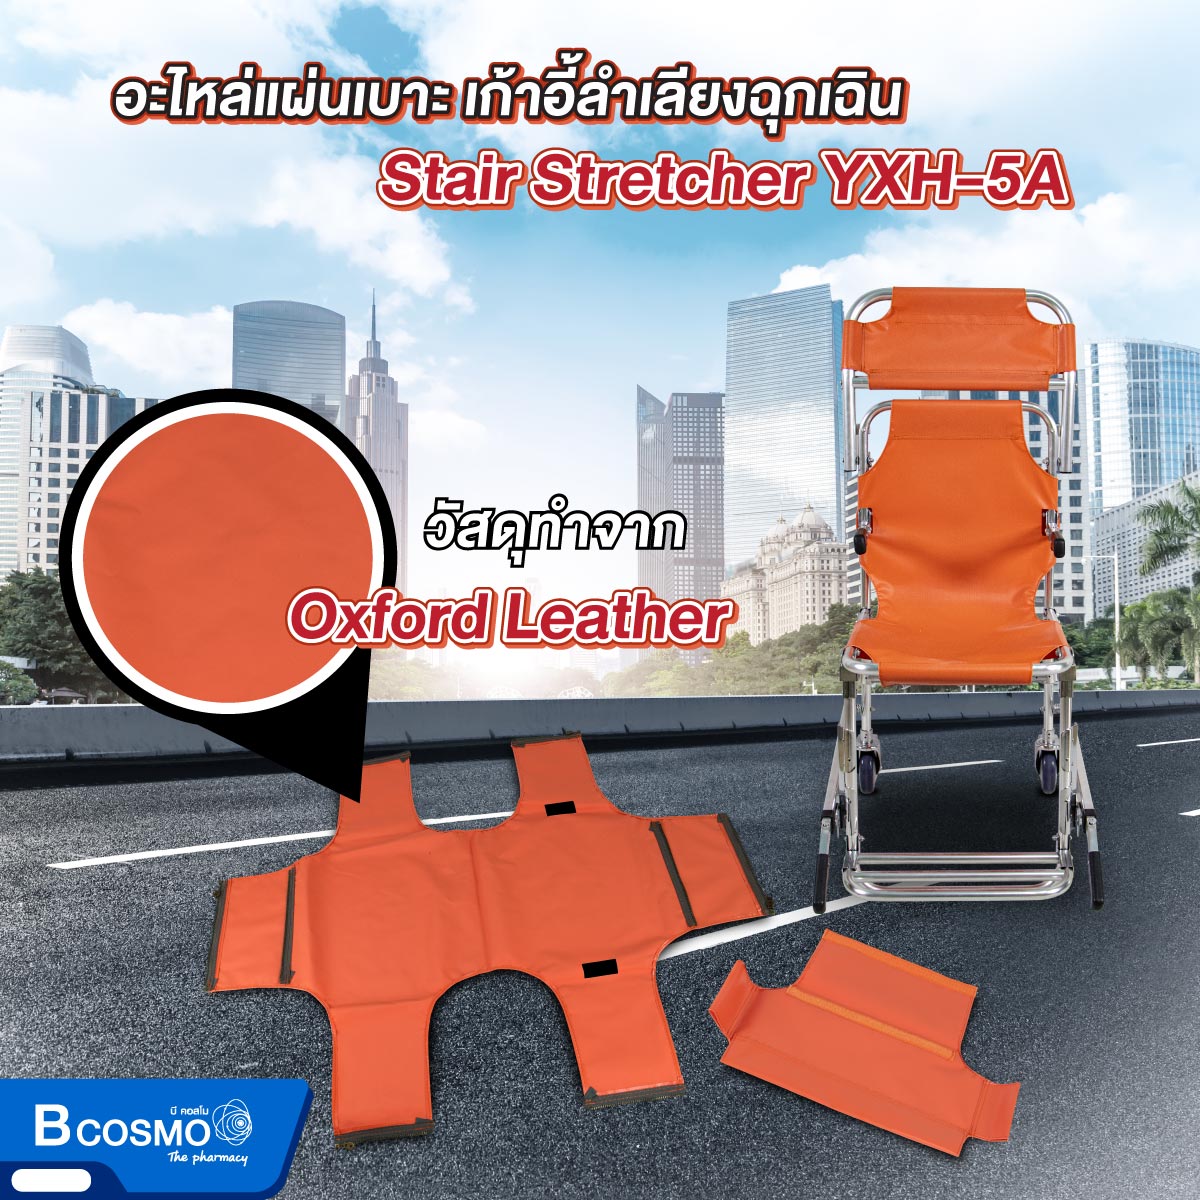 อะไหล่แผ่นเบาะ เก้าอี้ลำเลียงฉุกเฉิน Stair Stretcher YXH-5A สีส้ม